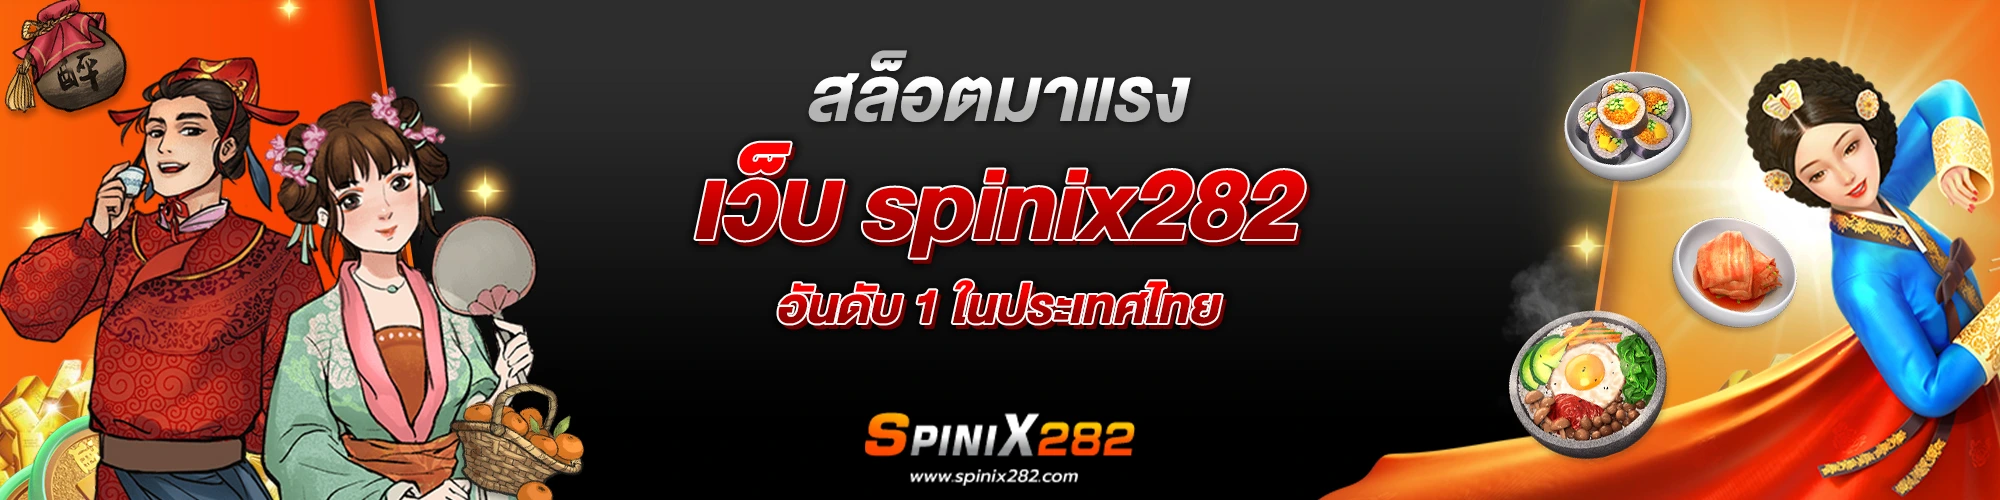 สล็อตมาแรง เว็บ spinix282 อันดับ 1 ในประเทศไทย​